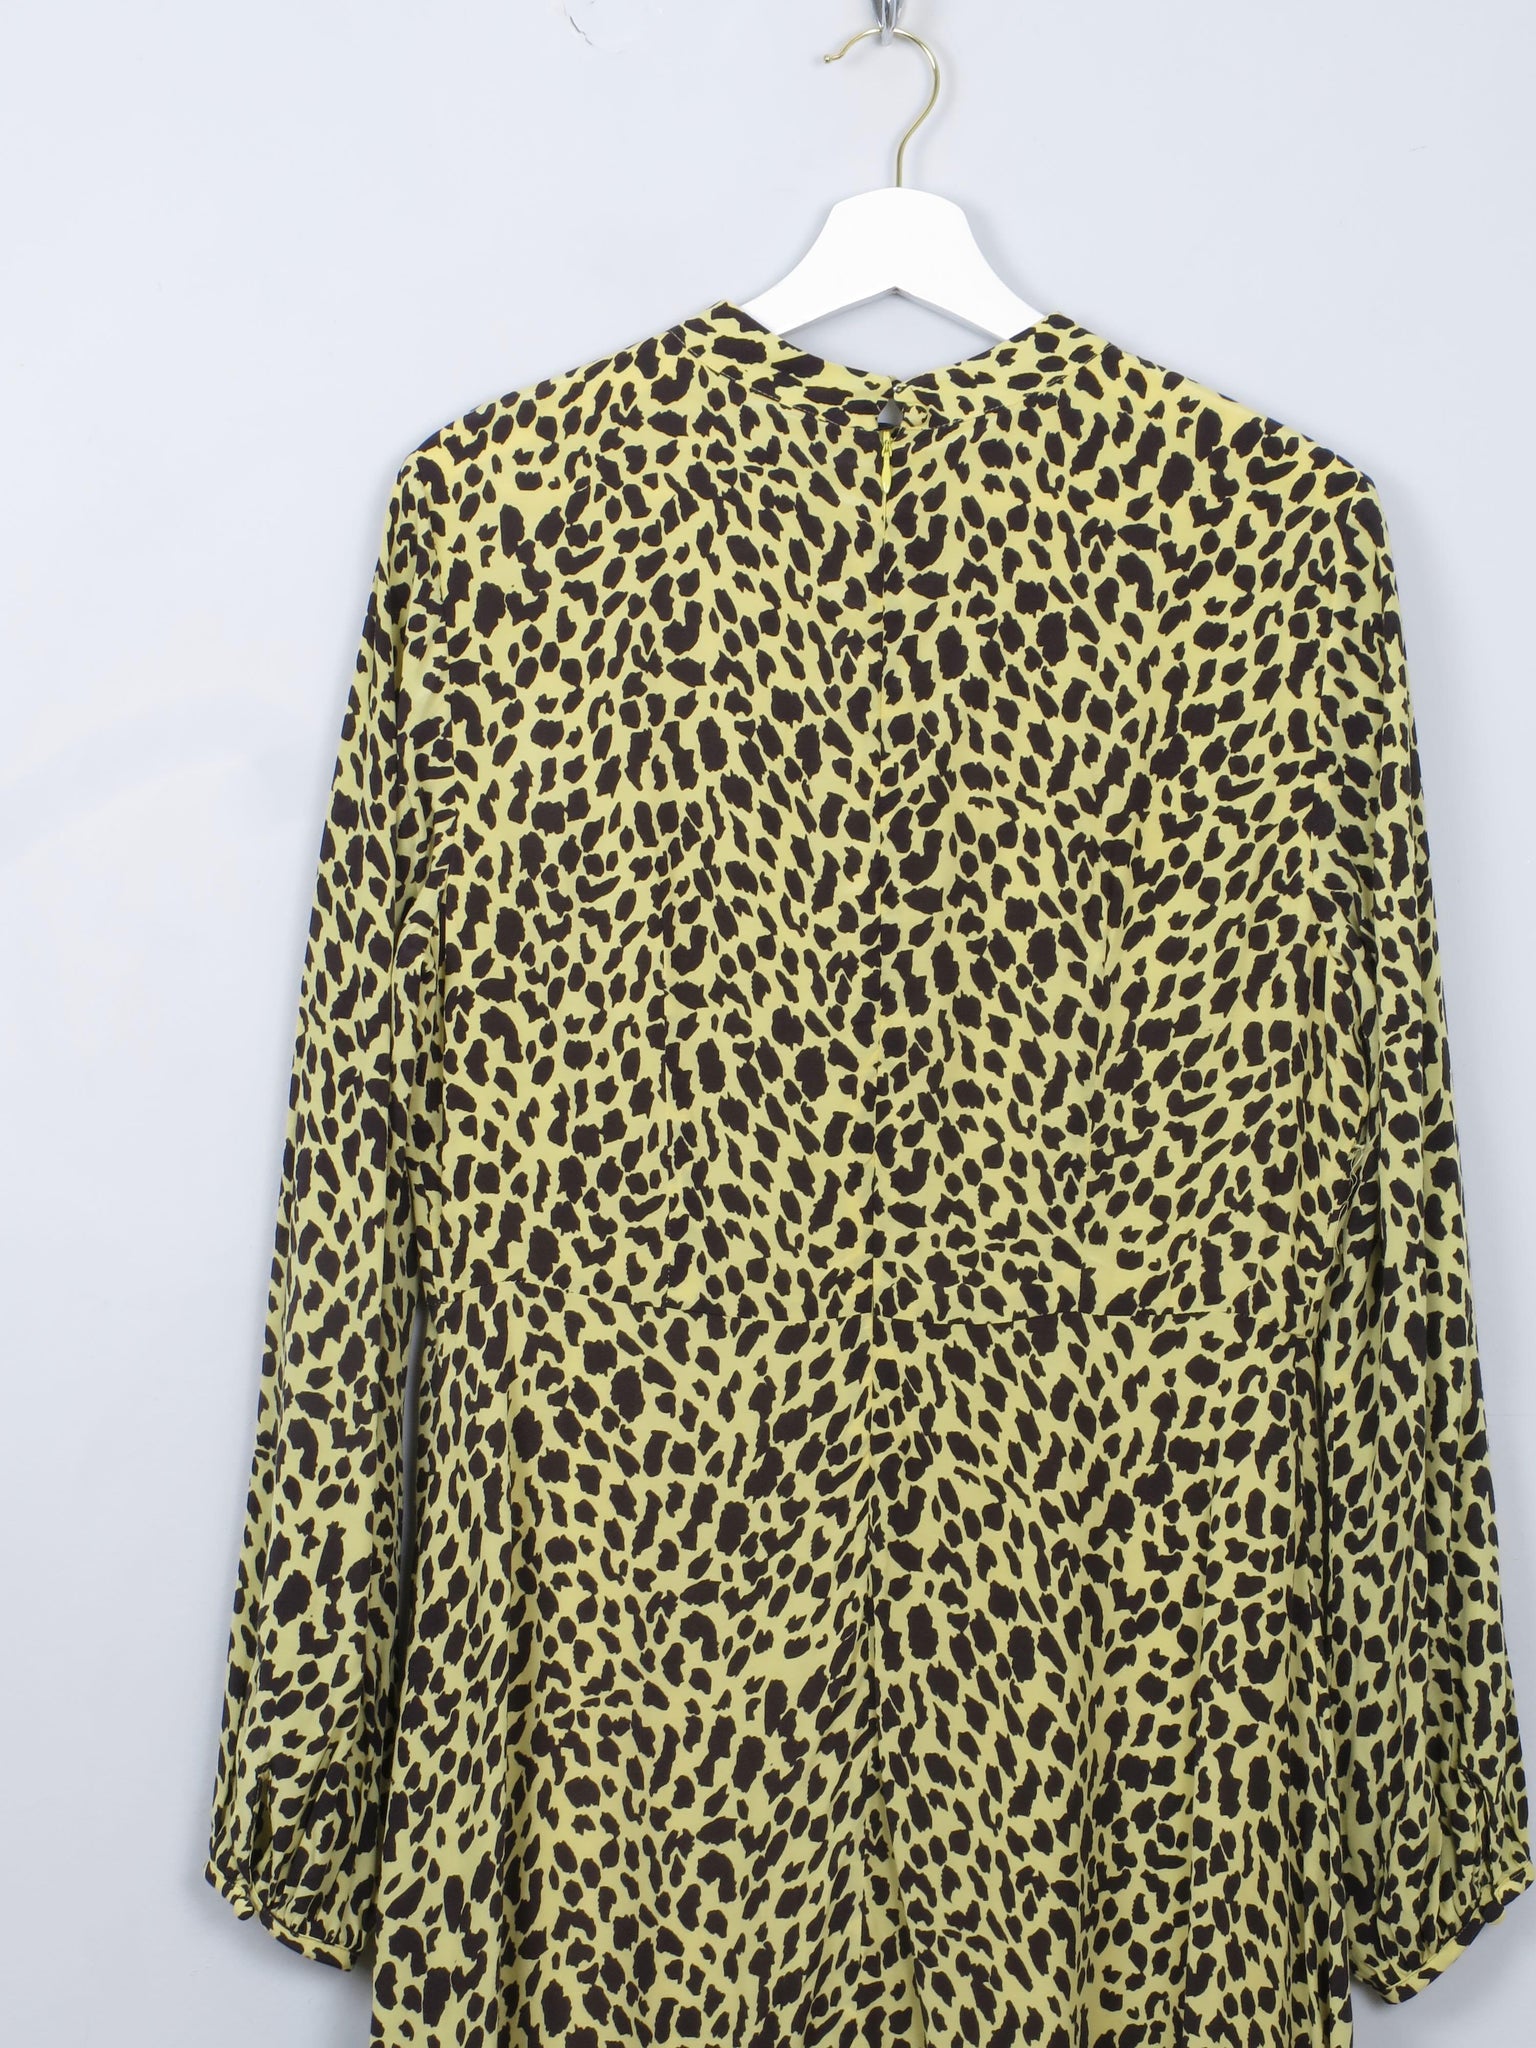 Yellow Leopard Print Mint Velvet Midi Dress 10/12 - The Harlequin